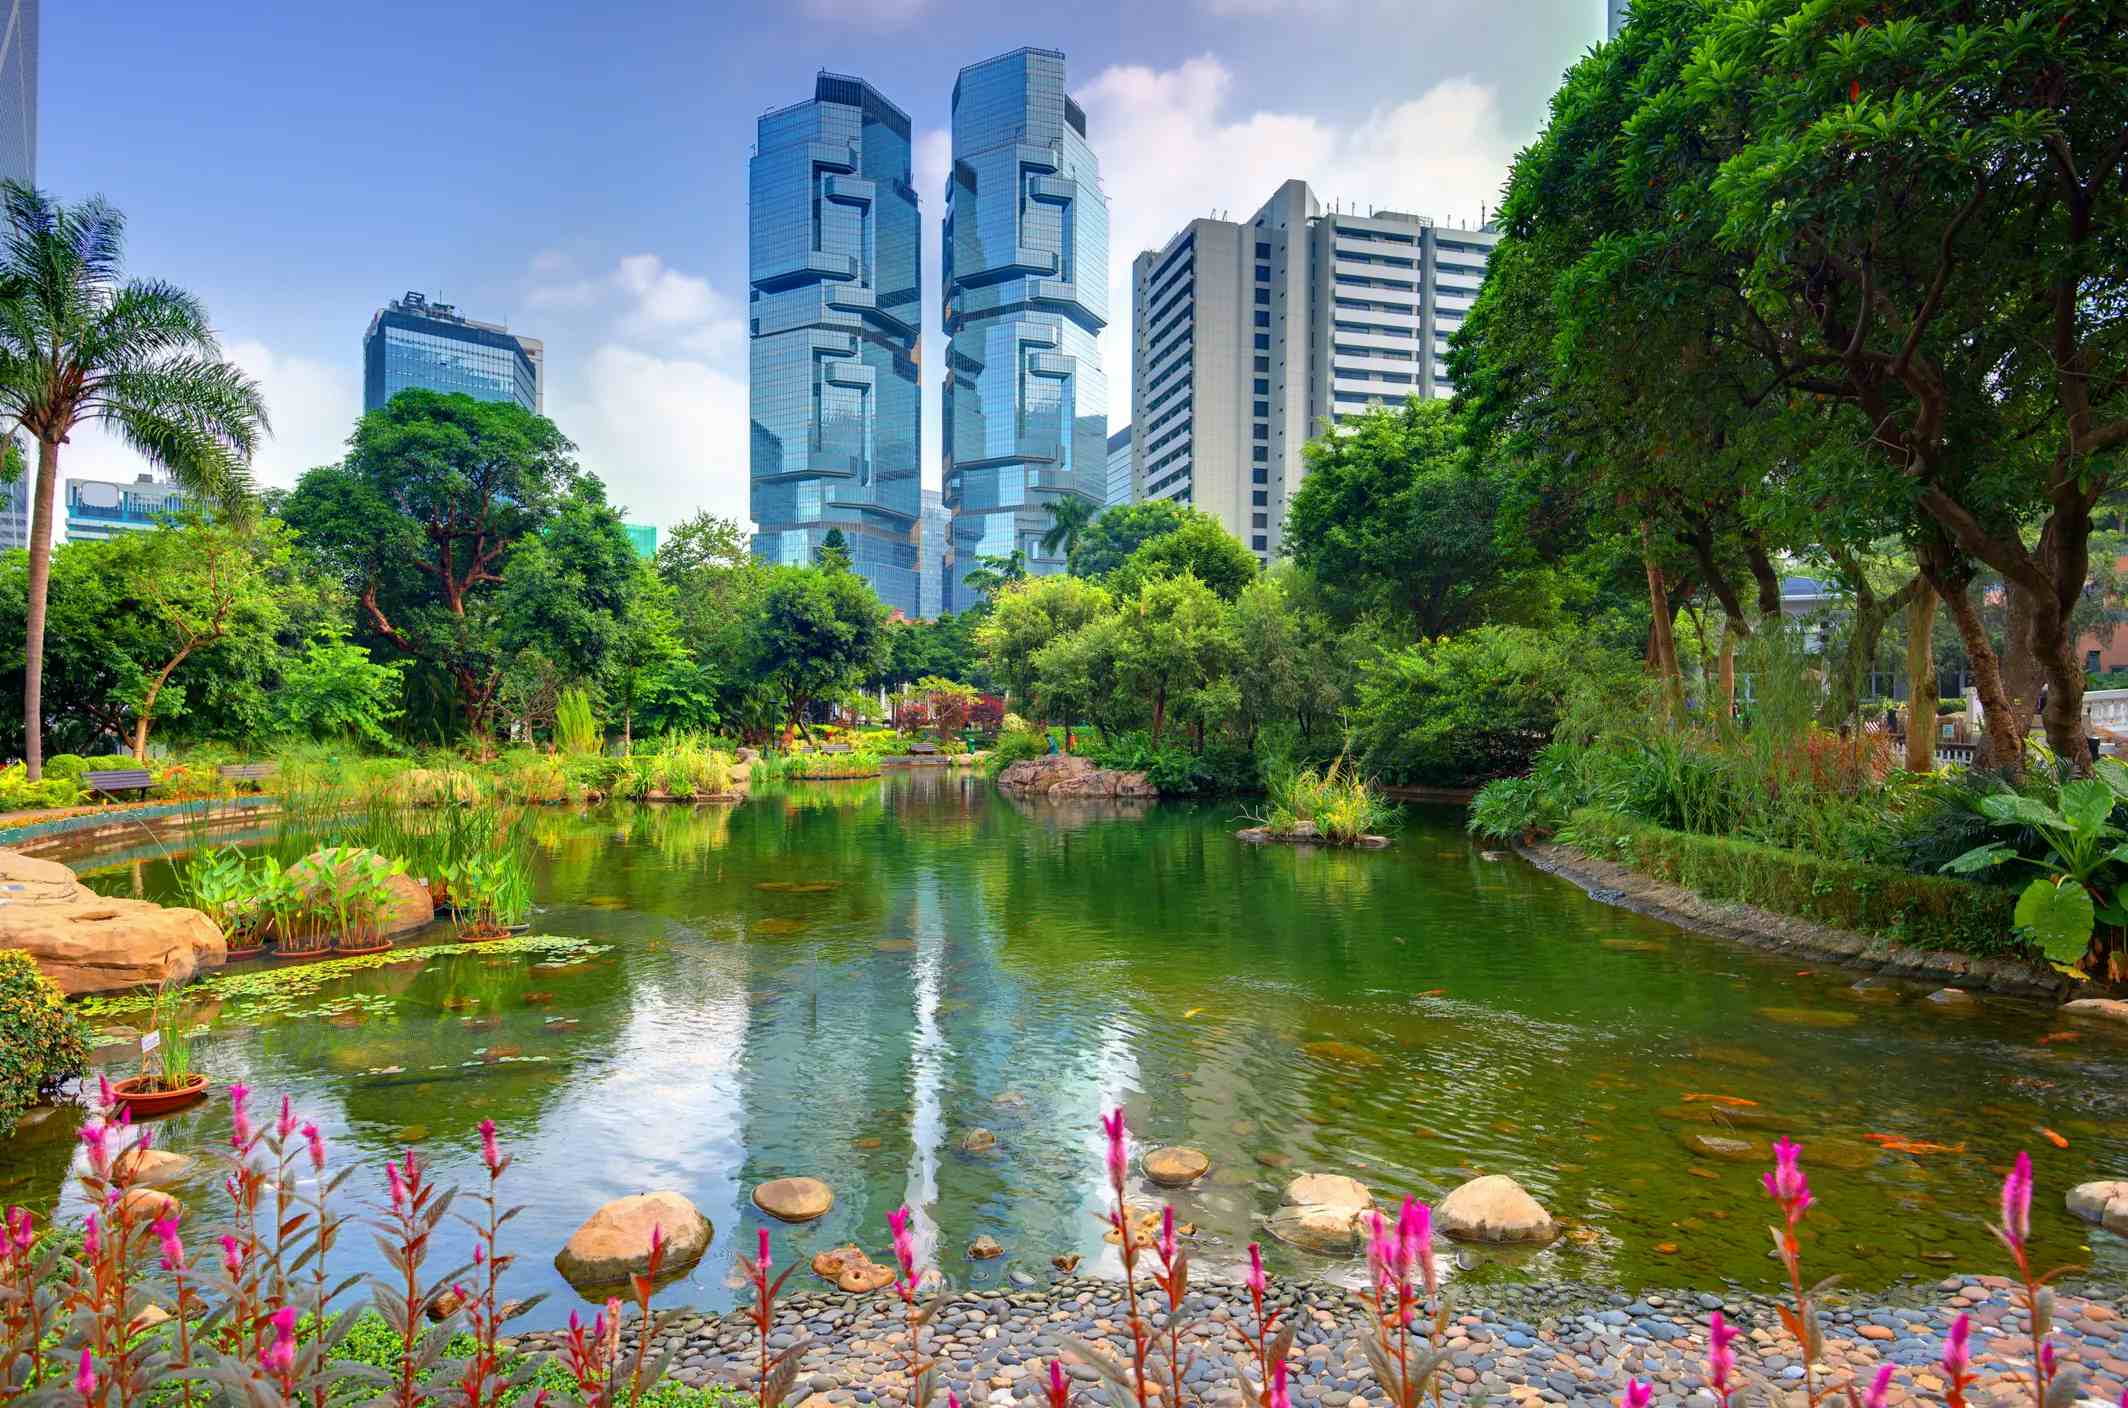 Hong Kong Park image